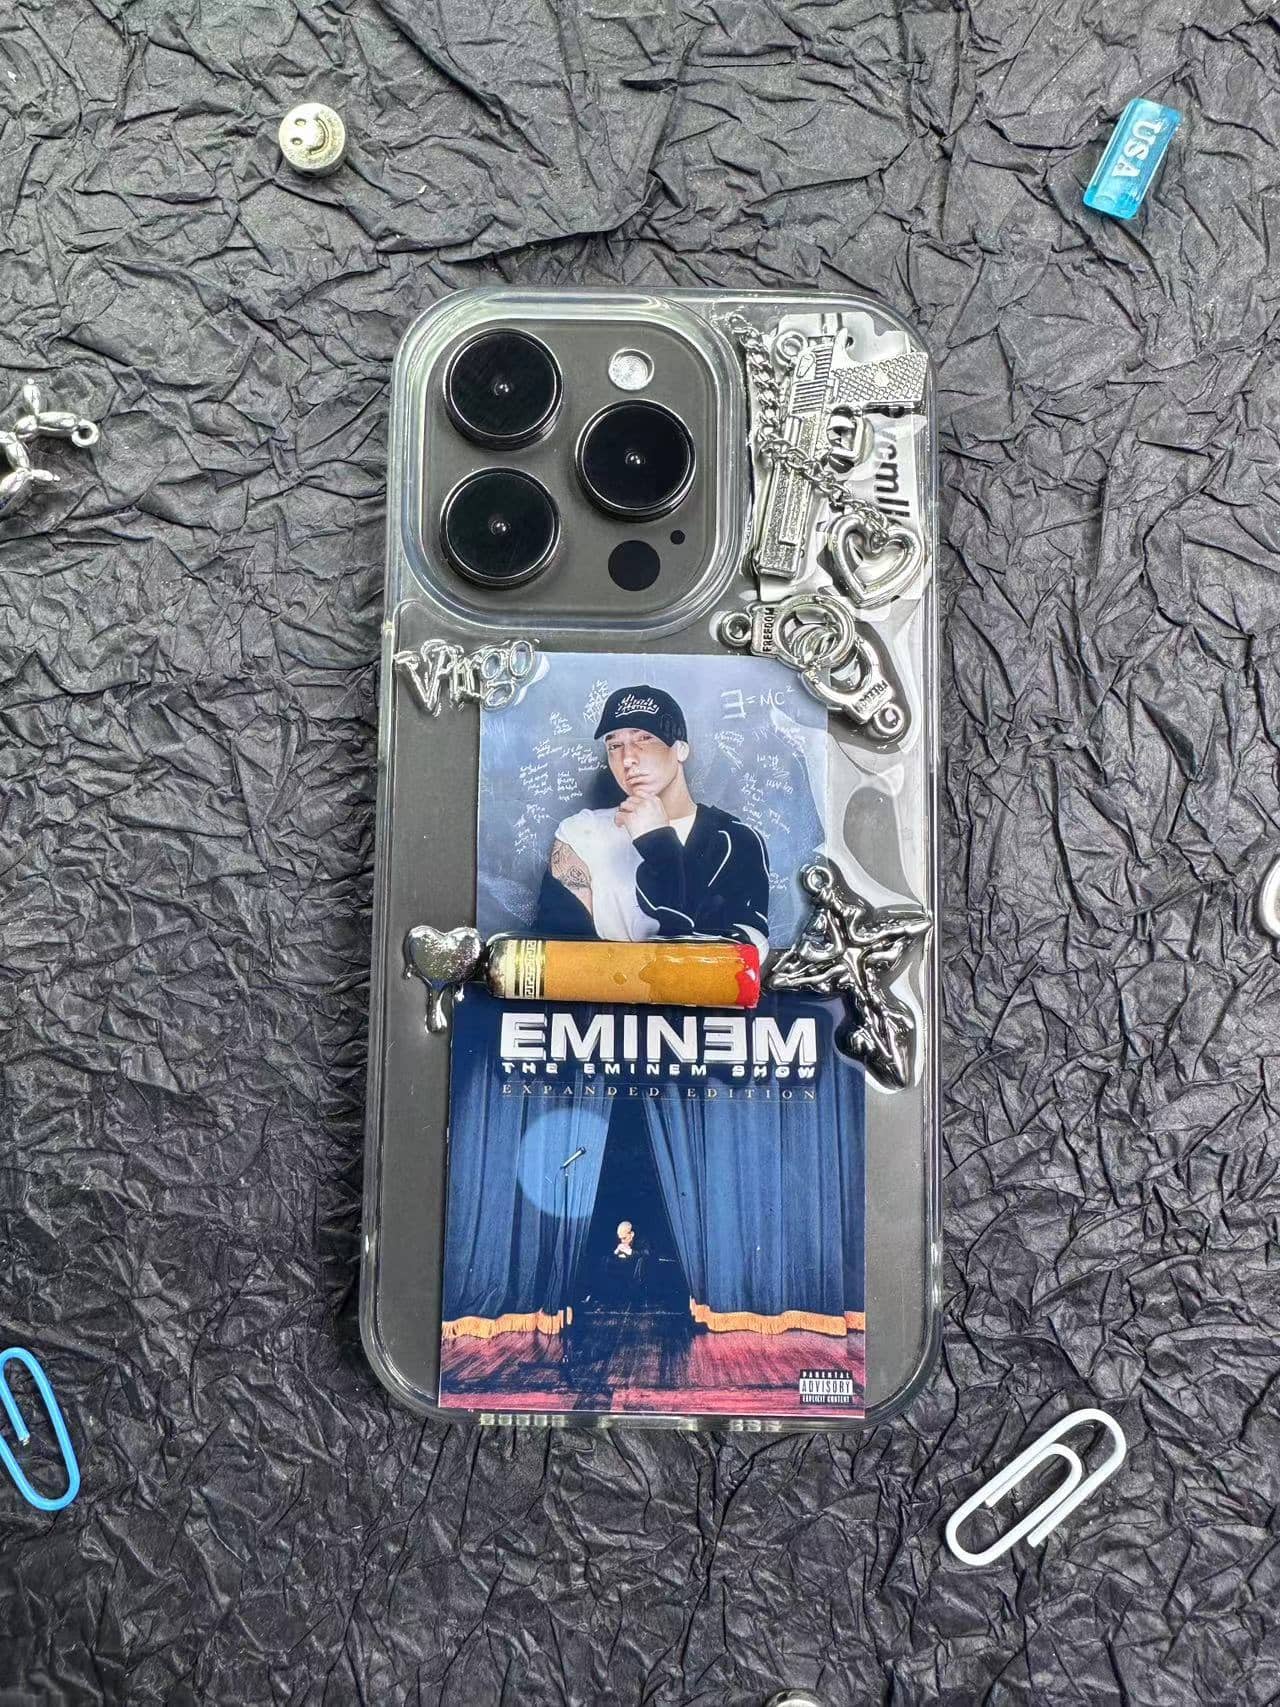 Eminem  Album Cover    style---6